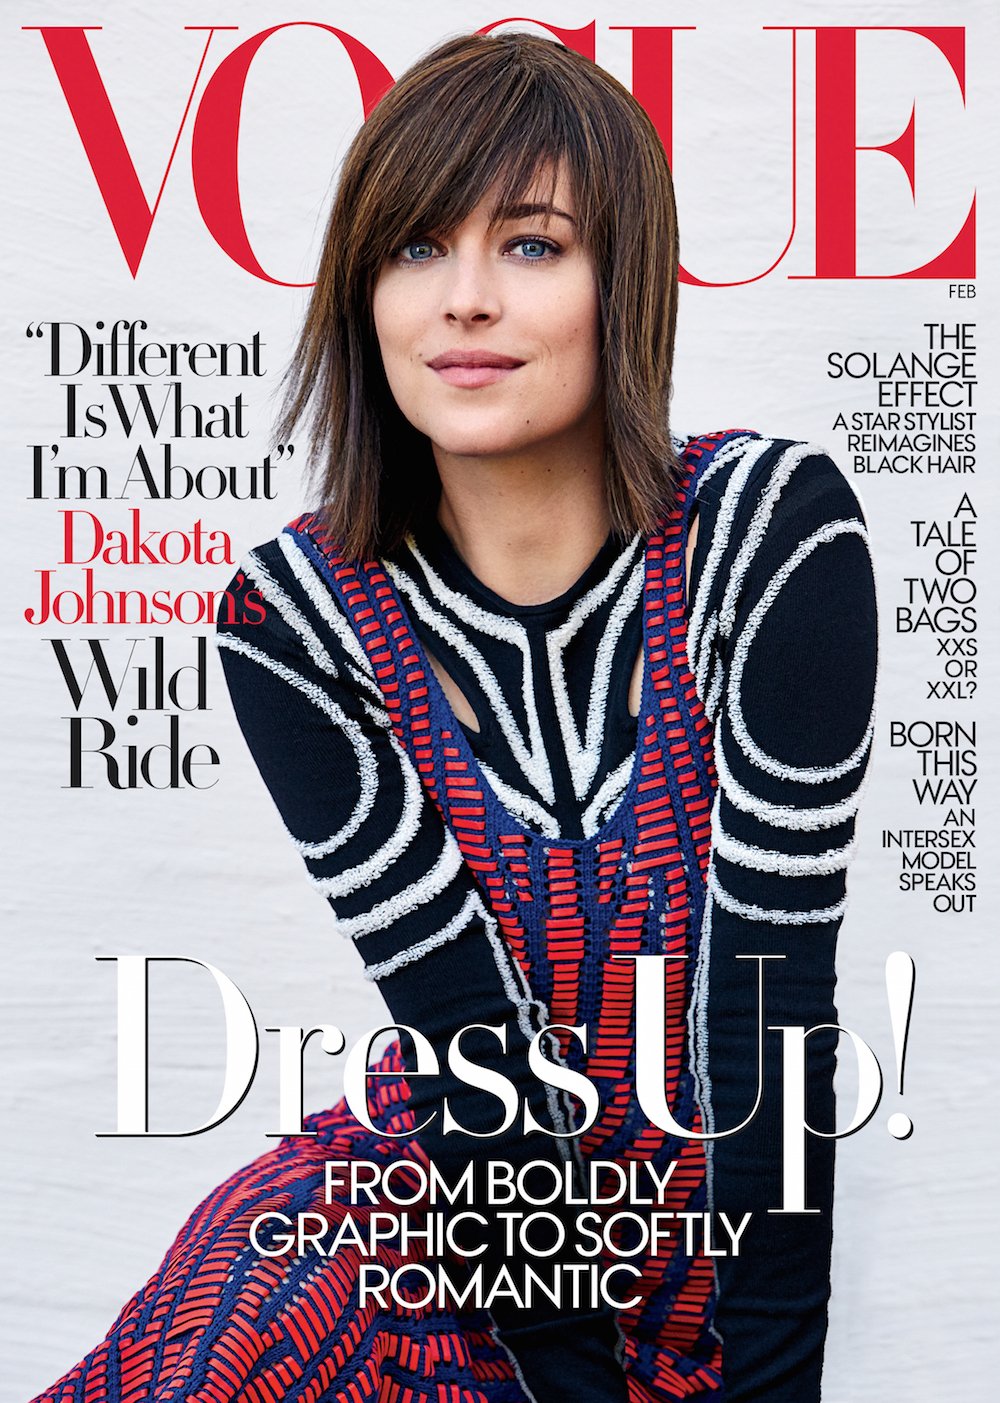 Vogue's Covers: Vogue US